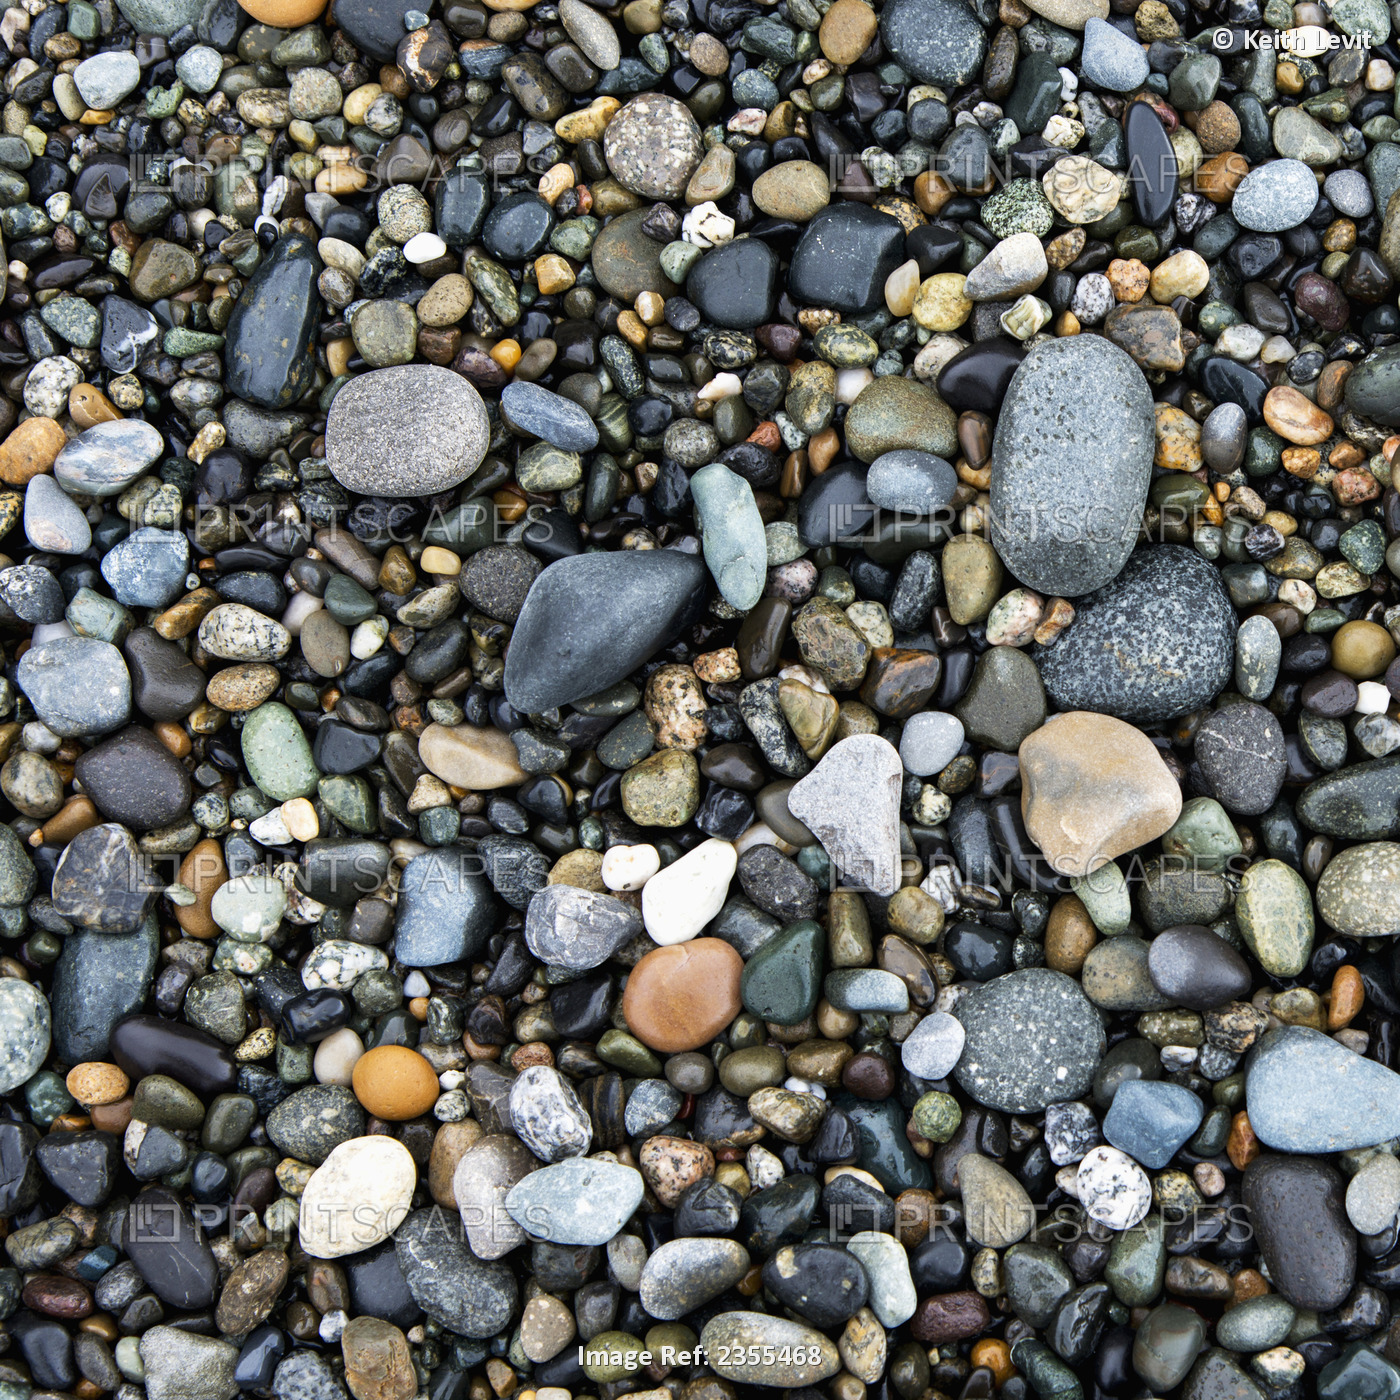 Wet Rocks On The Beach; Oak Harbor, Washington, United States Of America